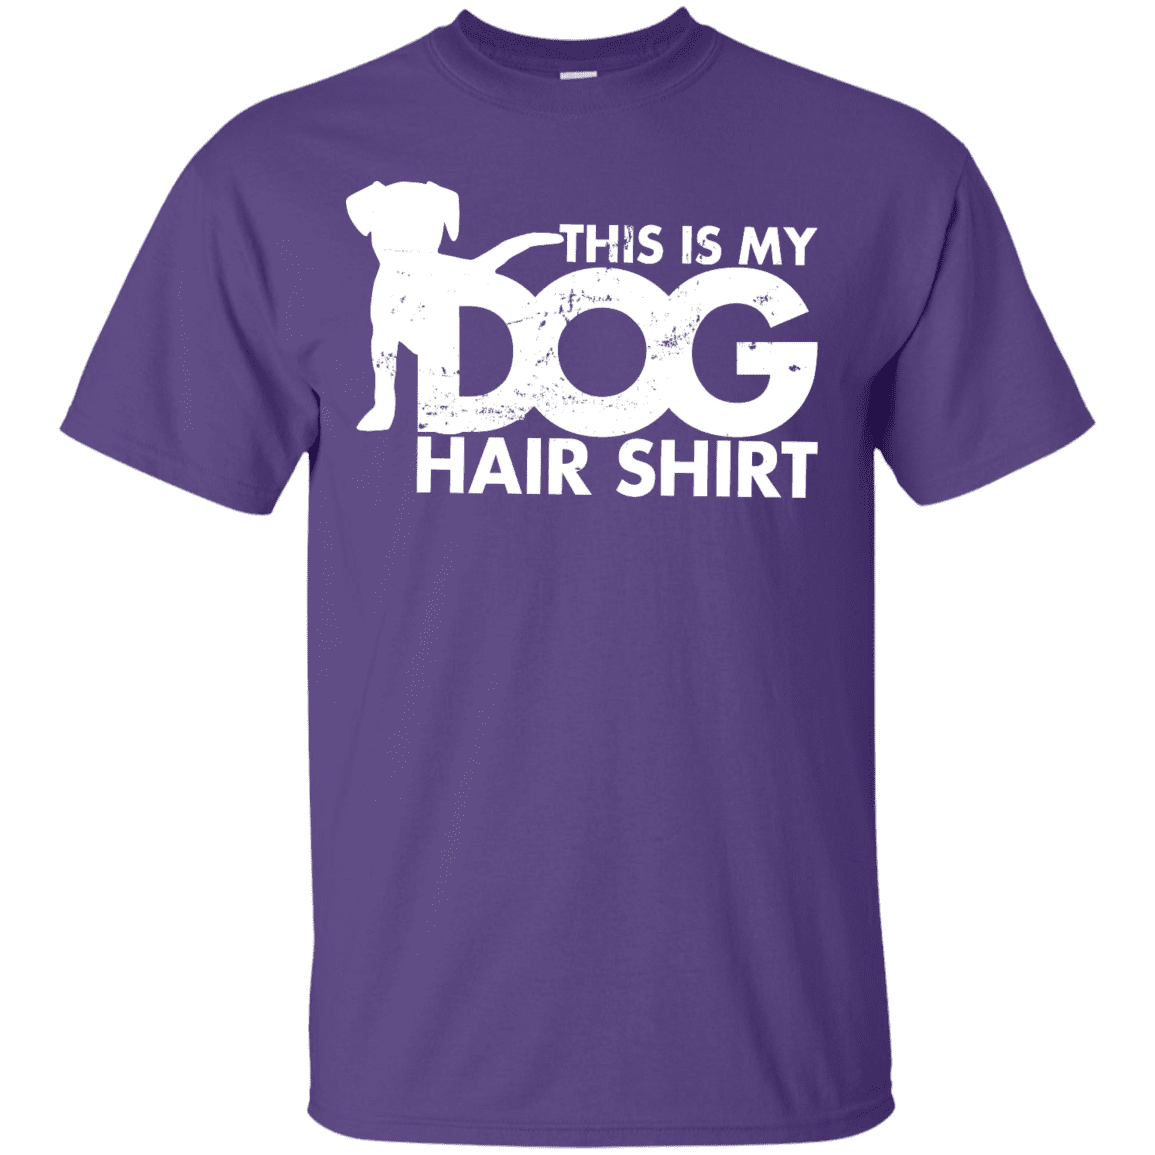 Dog Hair Shirt - T Shirt.